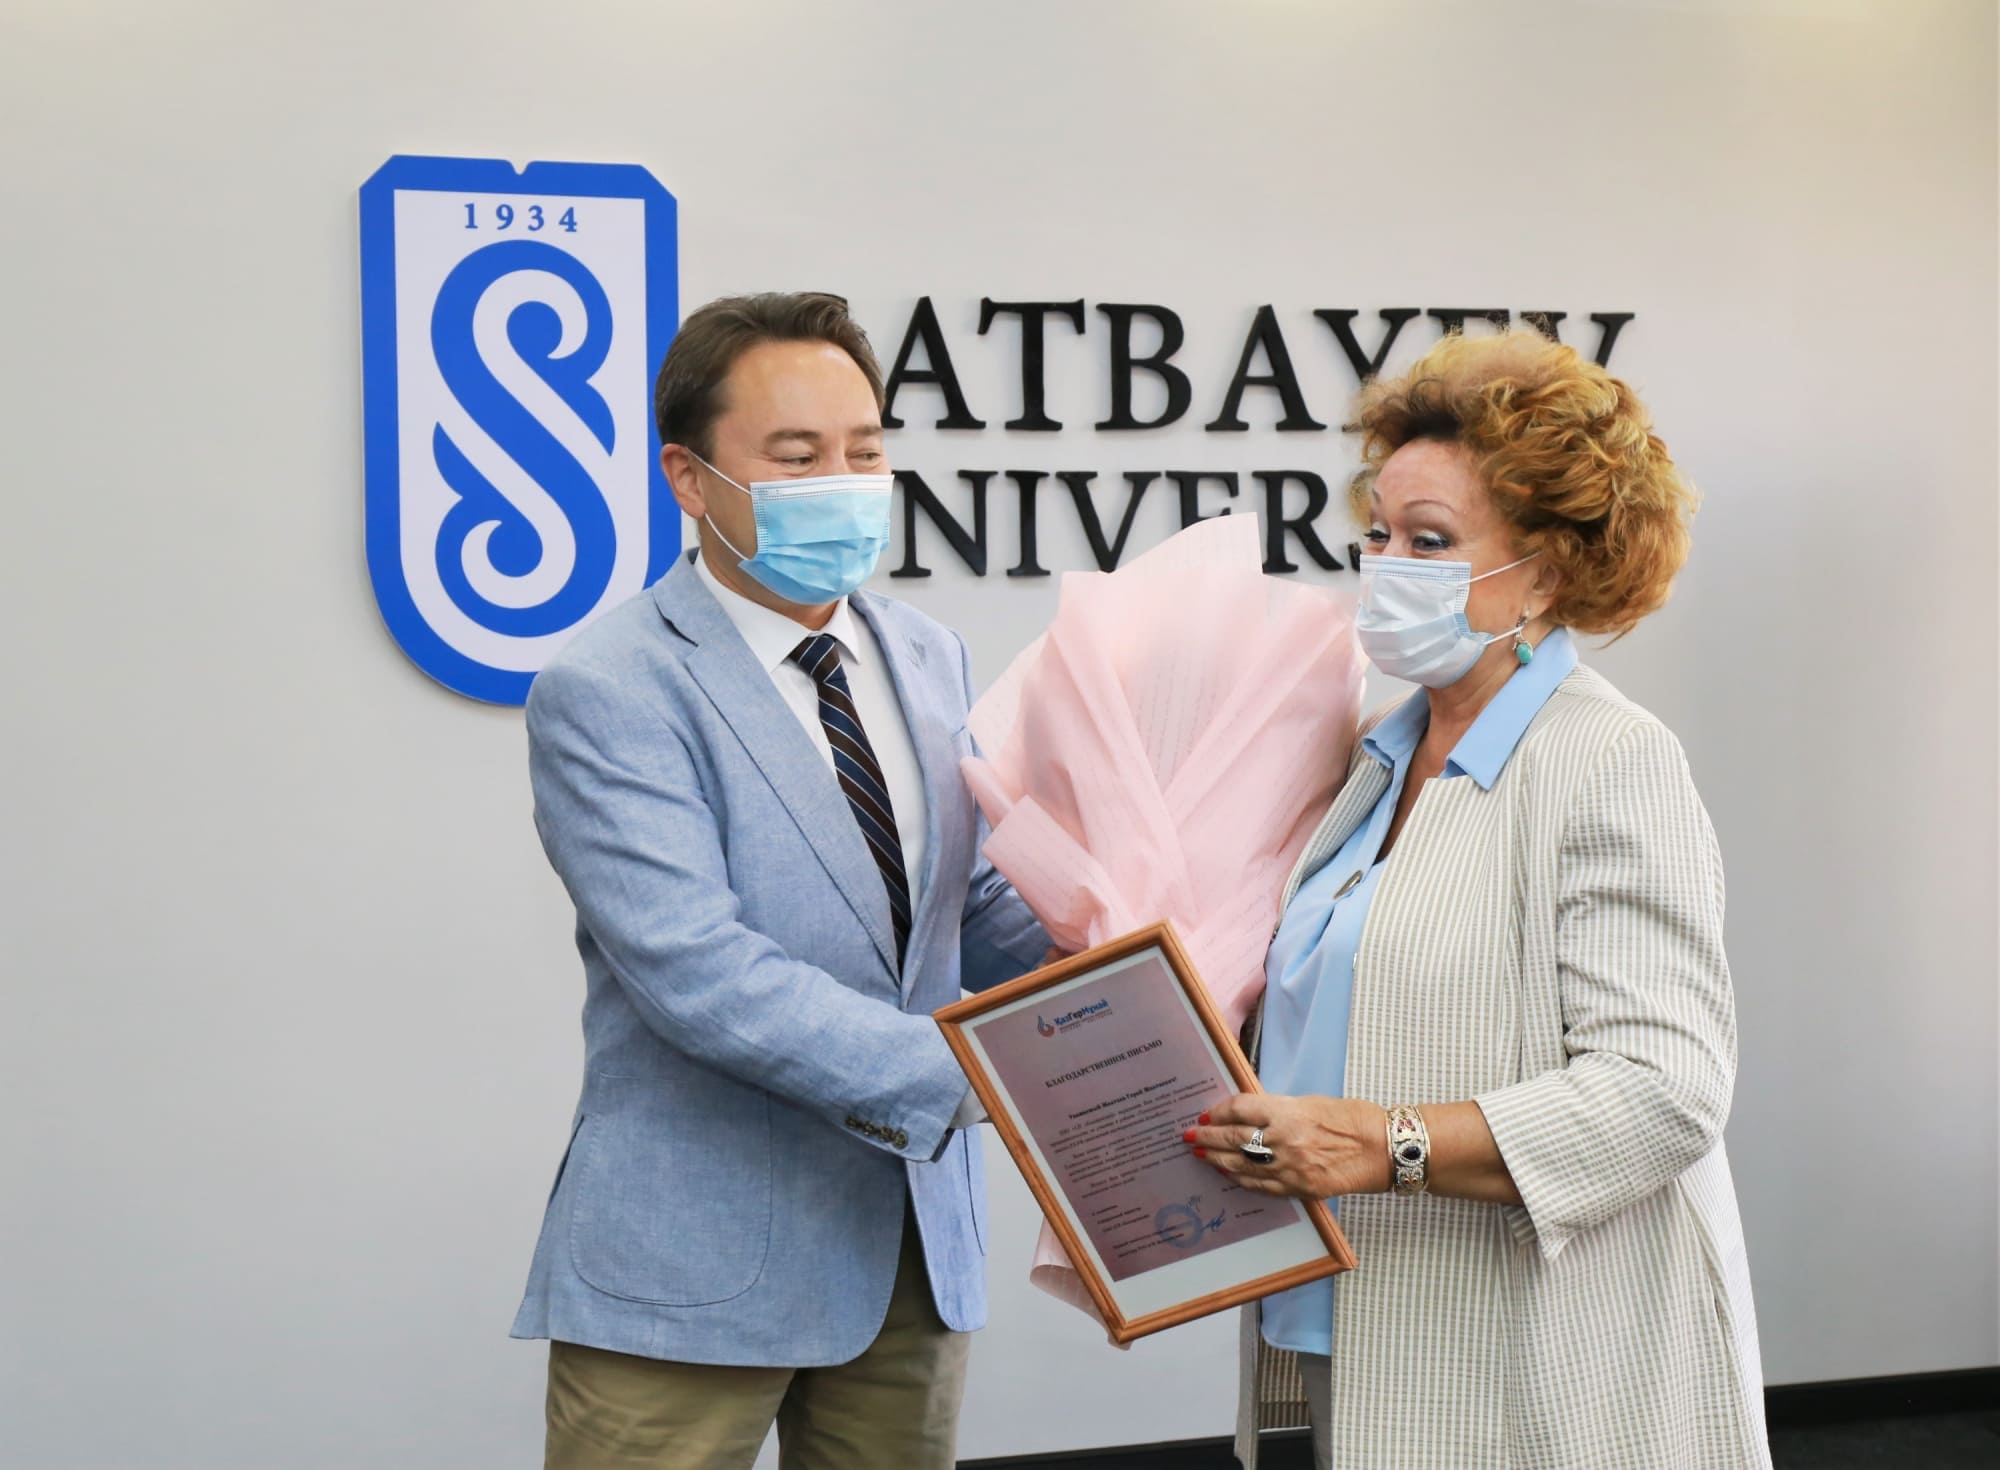 Satbayev University поздравляет работников нефтегазового комплекса